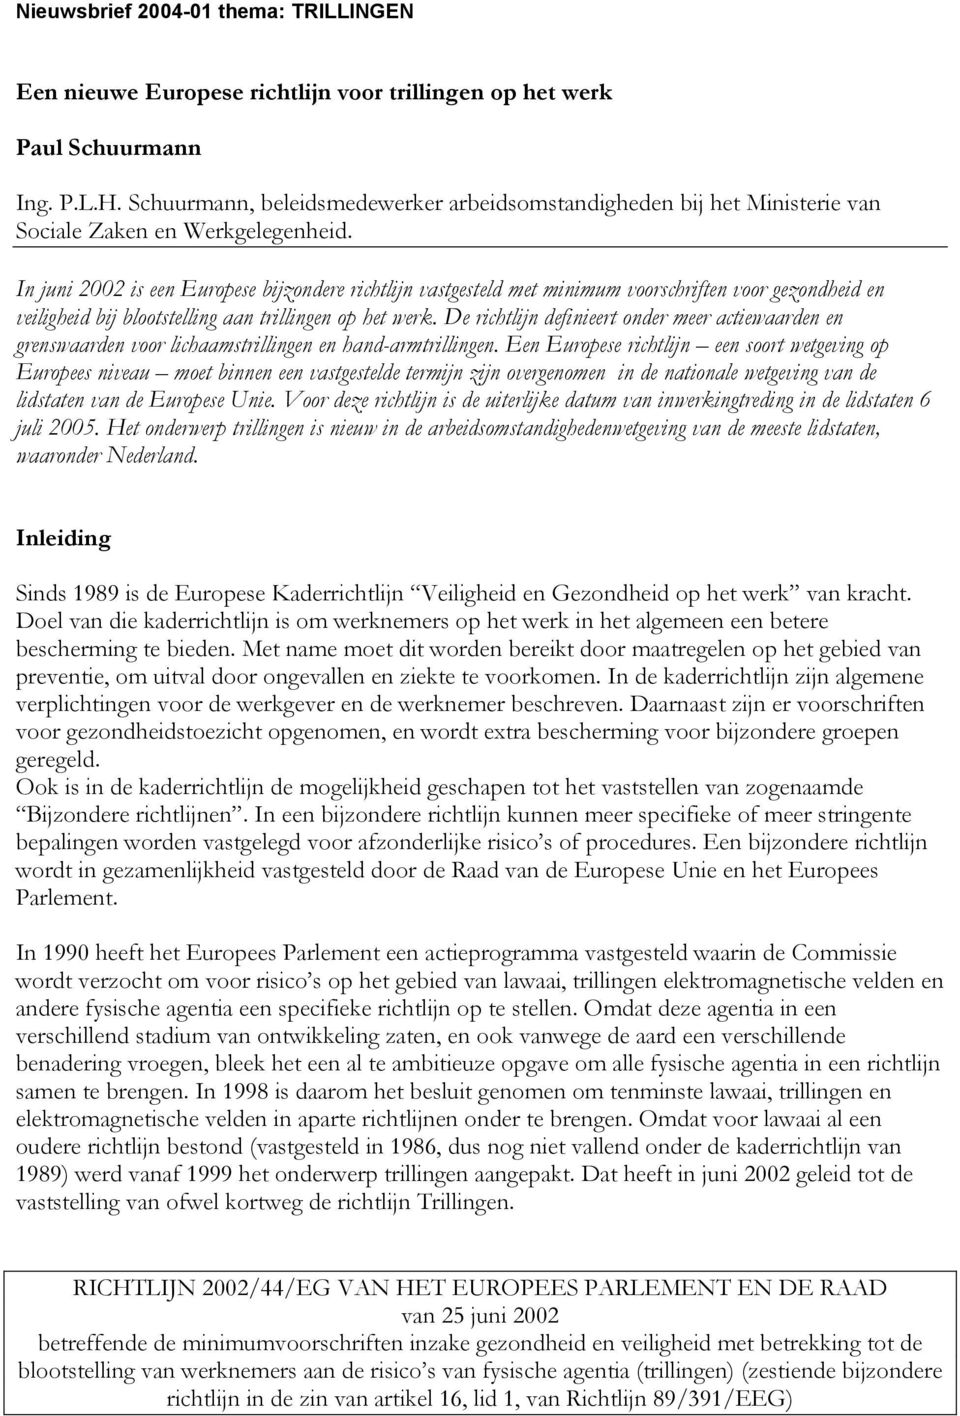 In juni 2002 is een Europese bijzondere richtlijn vastgesteld met minimum voorschriften voor gezondheid en veiligheid bij blootstelling aan trillingen op het werk.